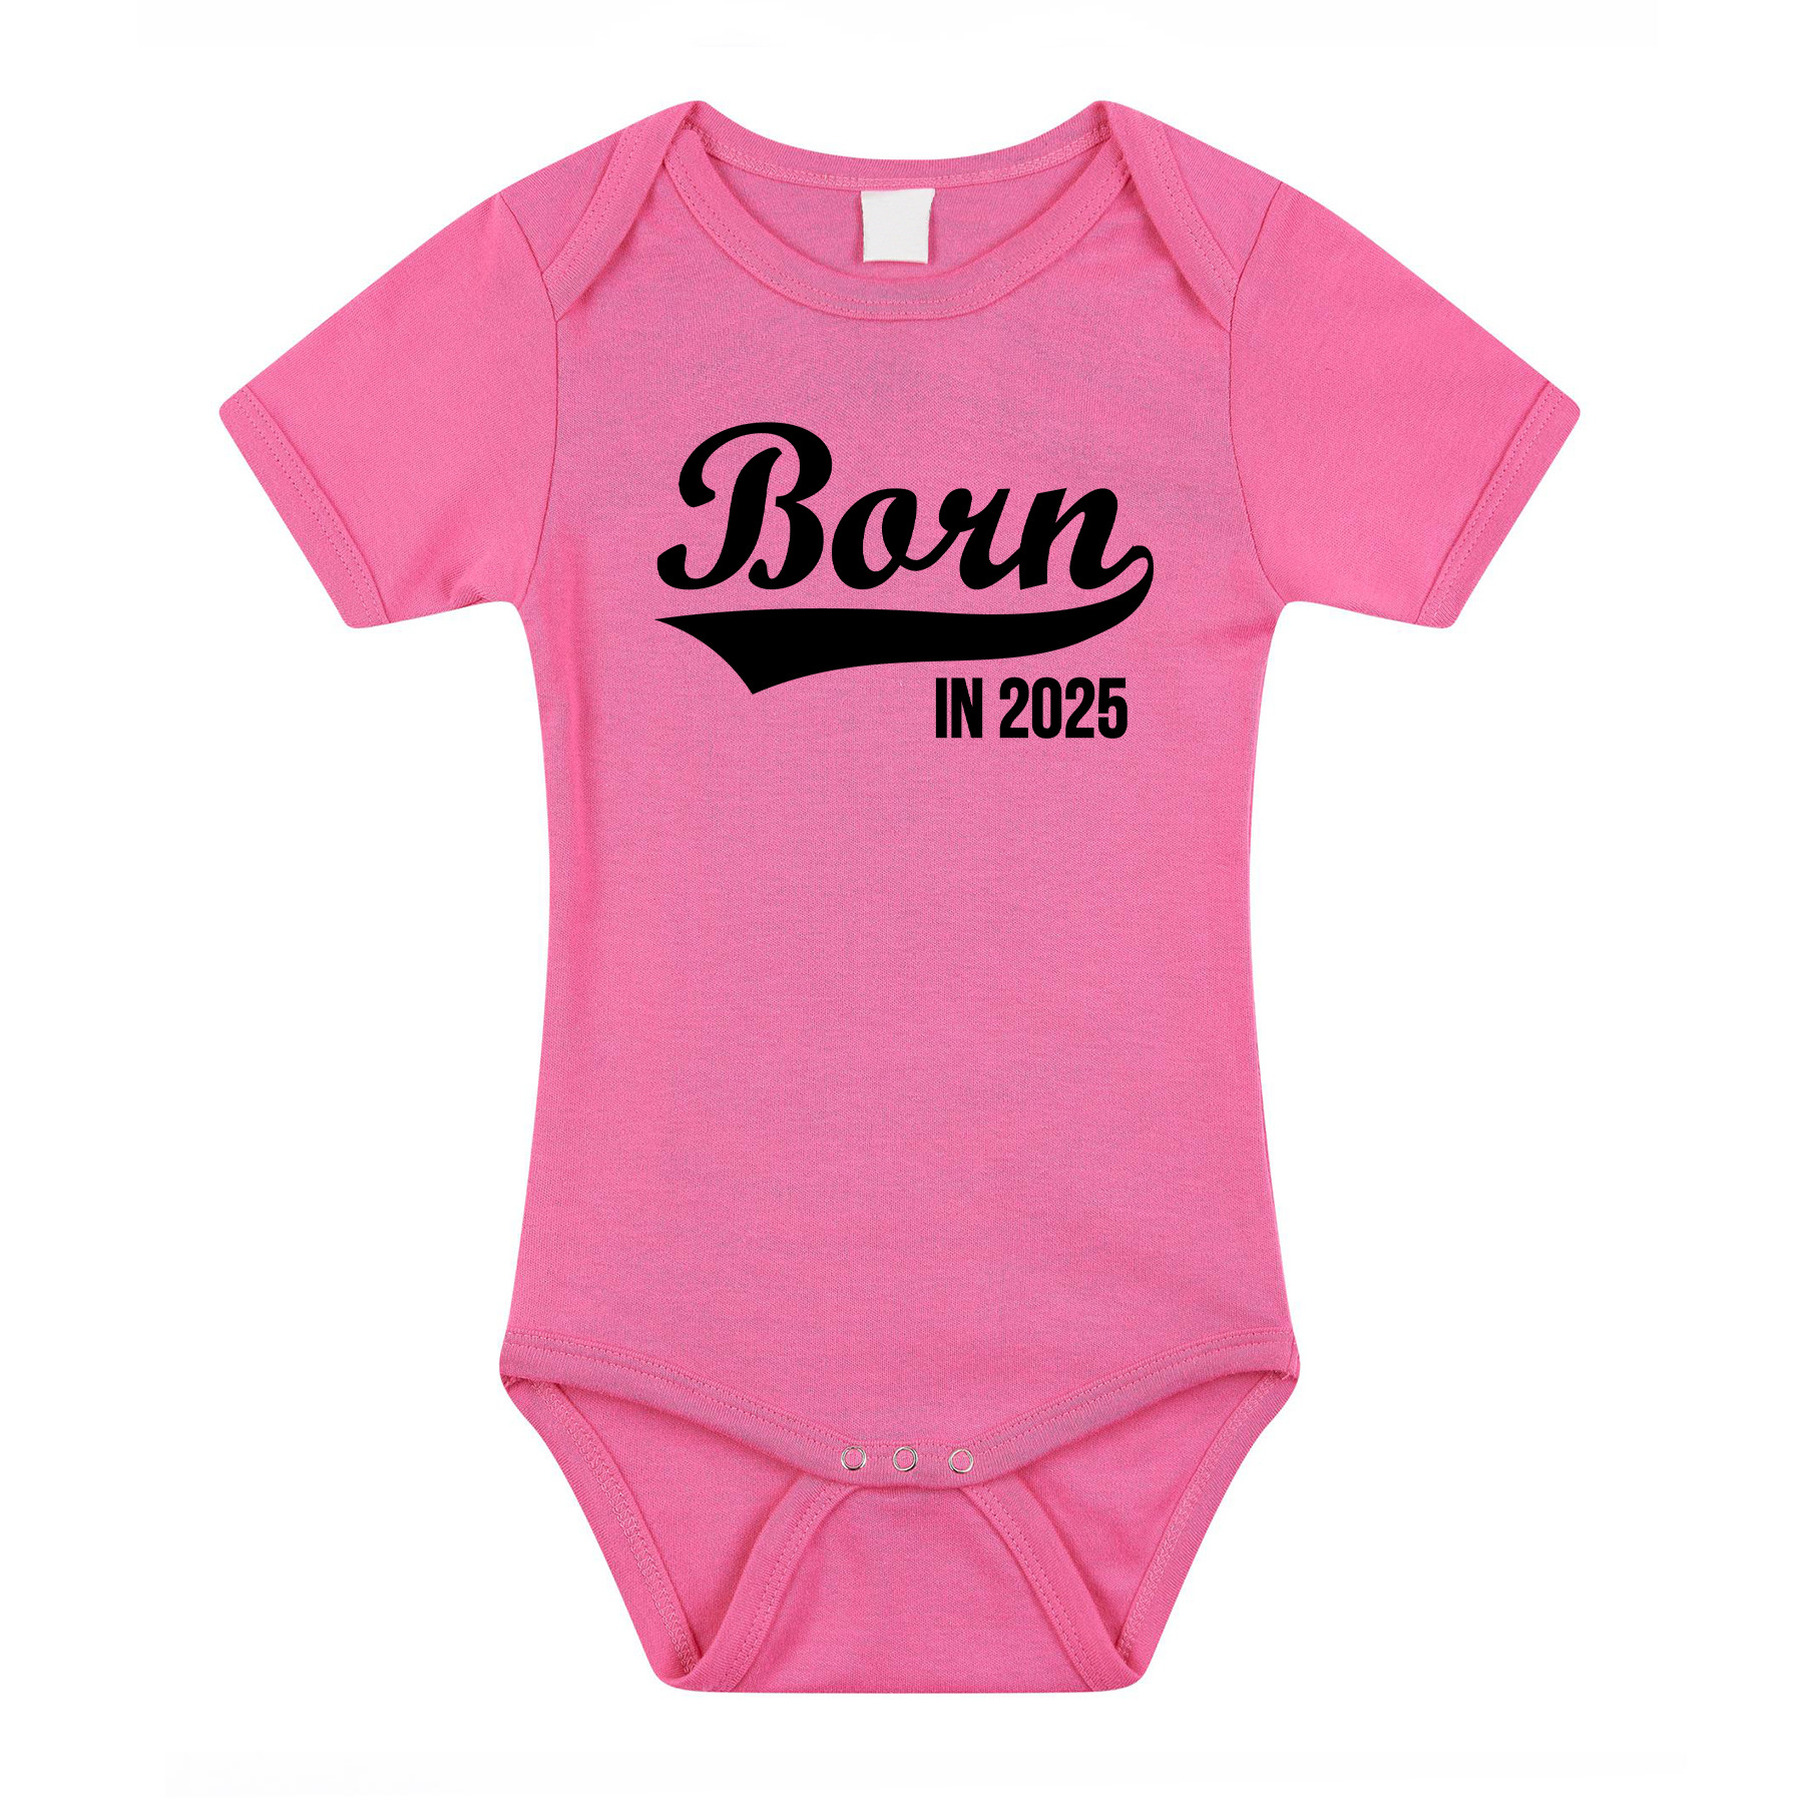 Born in 2025 cadeau baby rompertje roze meisjes